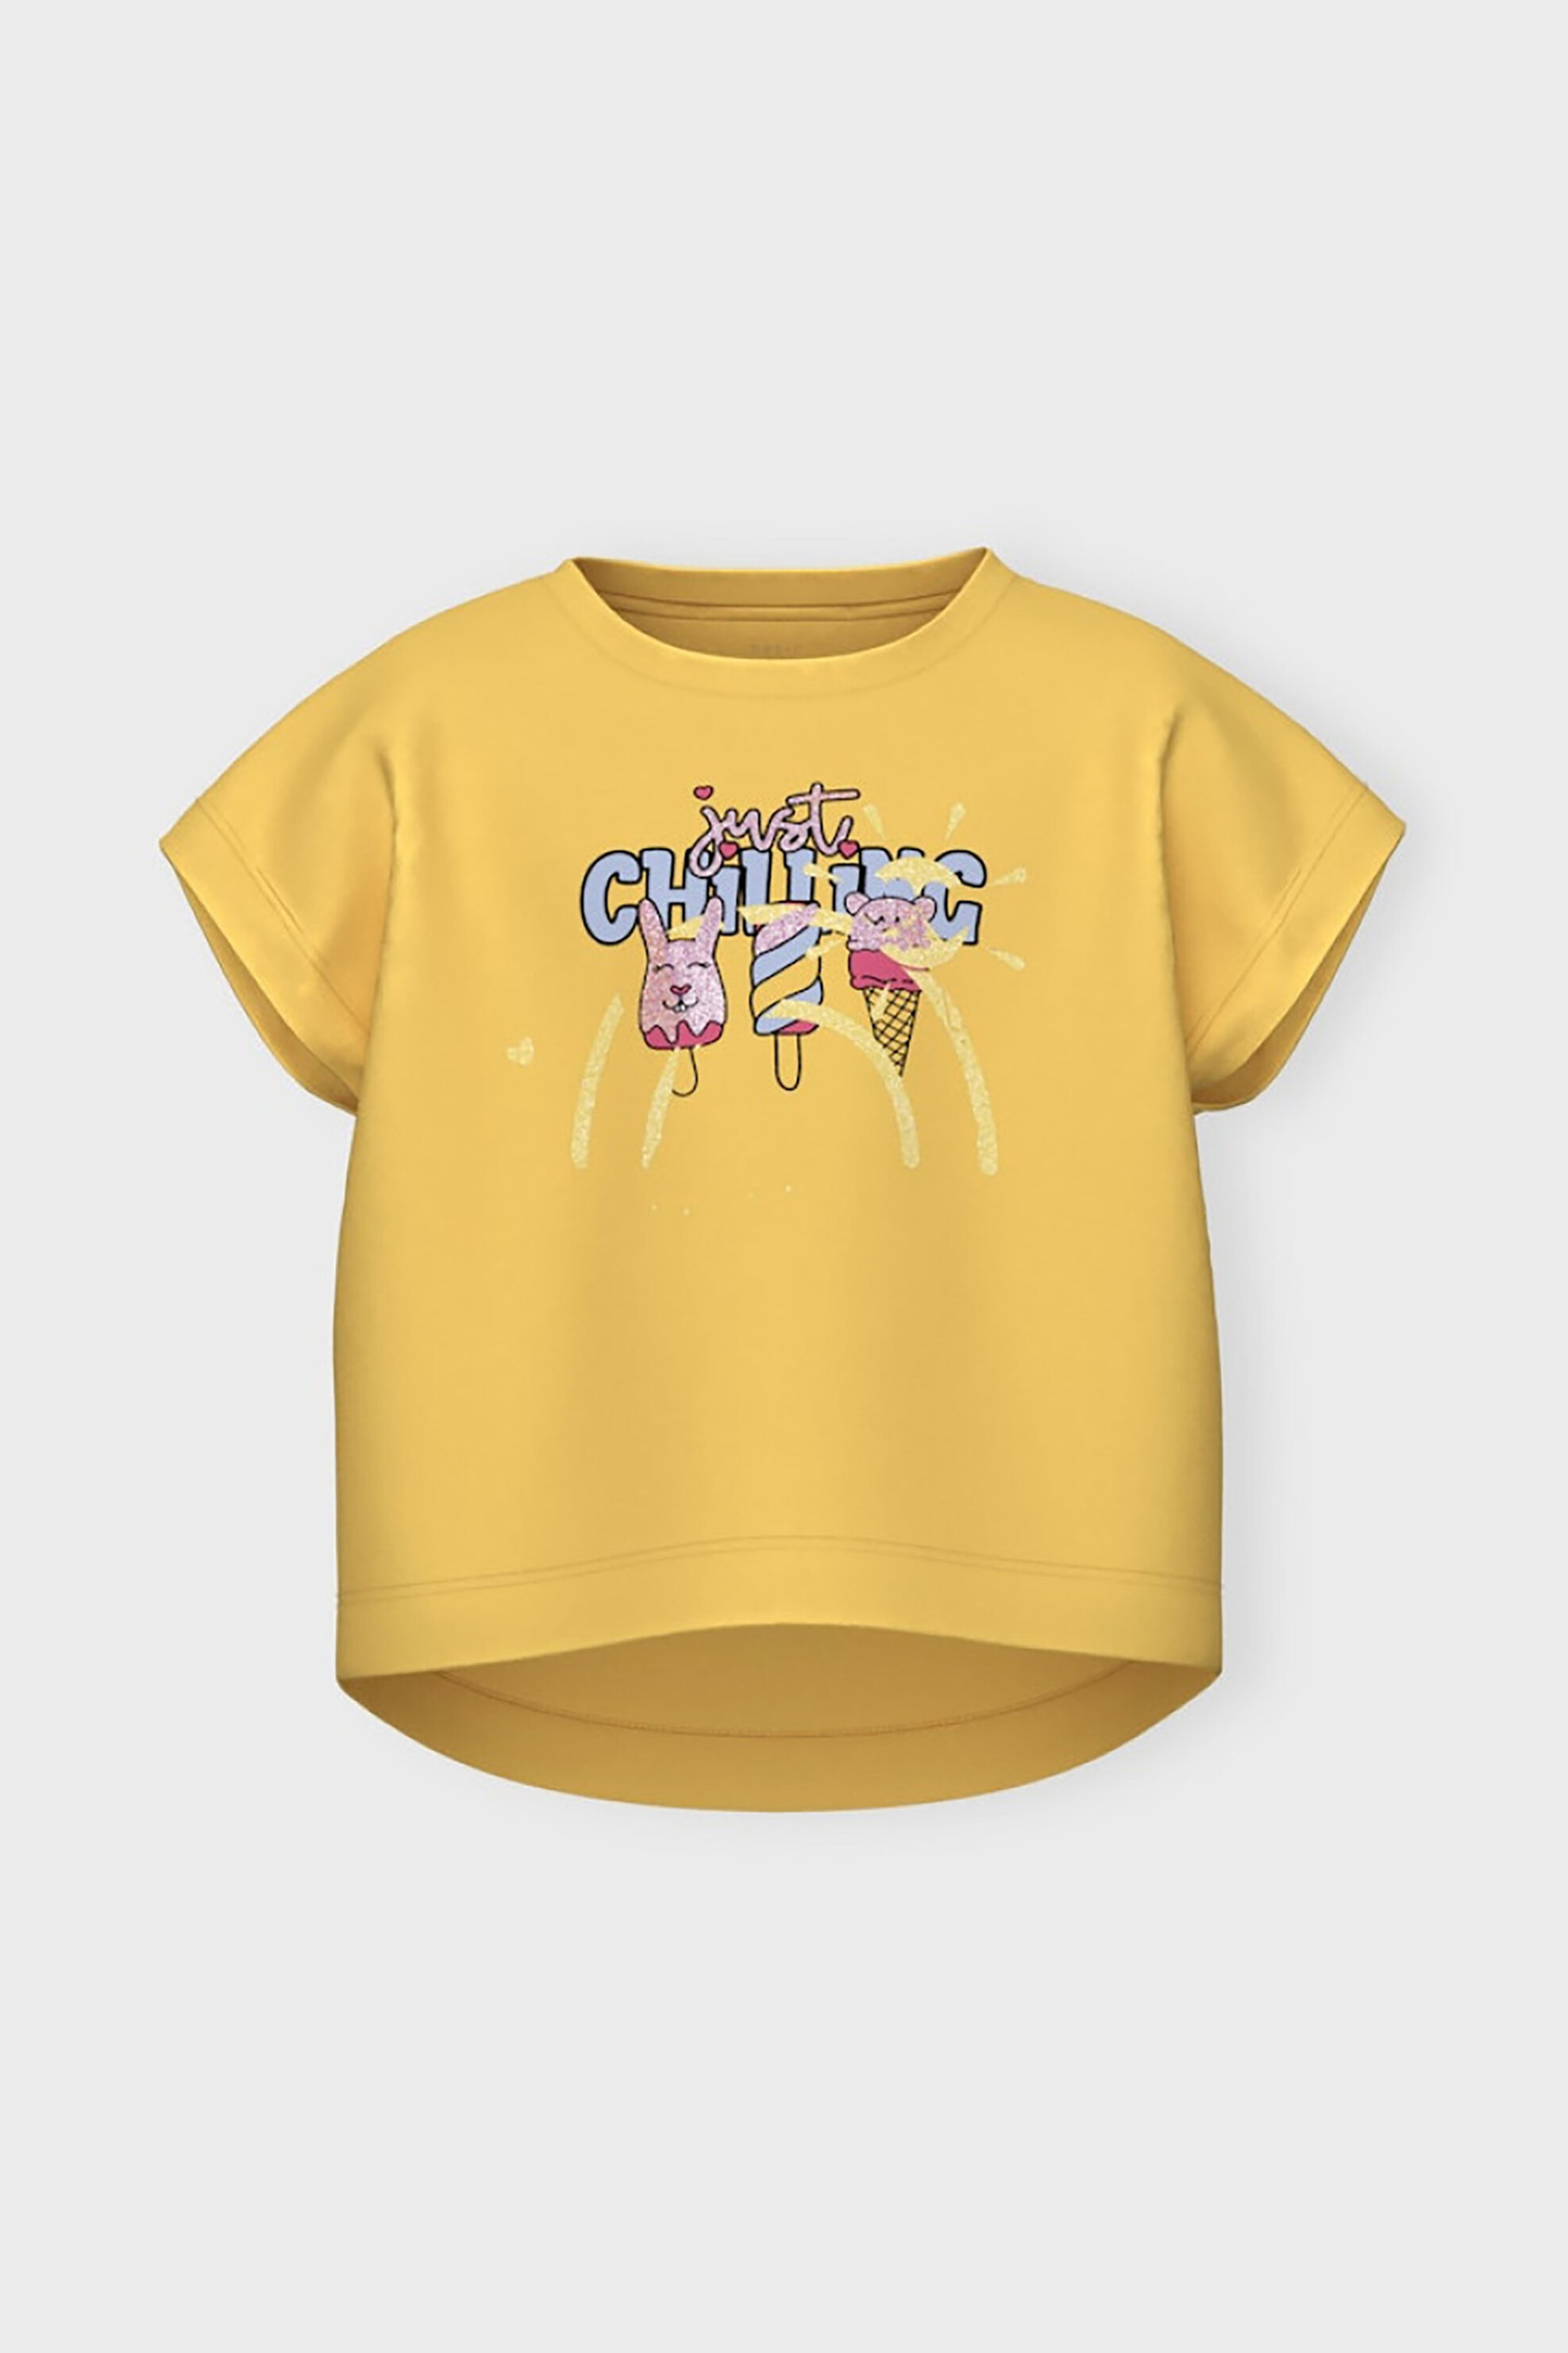 Παιδικά Ρούχα, Παπούτσια & Παιχνίδια > Παιδικά Ρούχα & Αξεσουάρ για Κορίτσια > Παιδικές Μπλούζες για Κορίτσια > Παιδικά T-Shirts για Κορίτσια Name It παιδικό cropped T-shirt με graphic print Loose Fit - 13228148 Κίτρινο